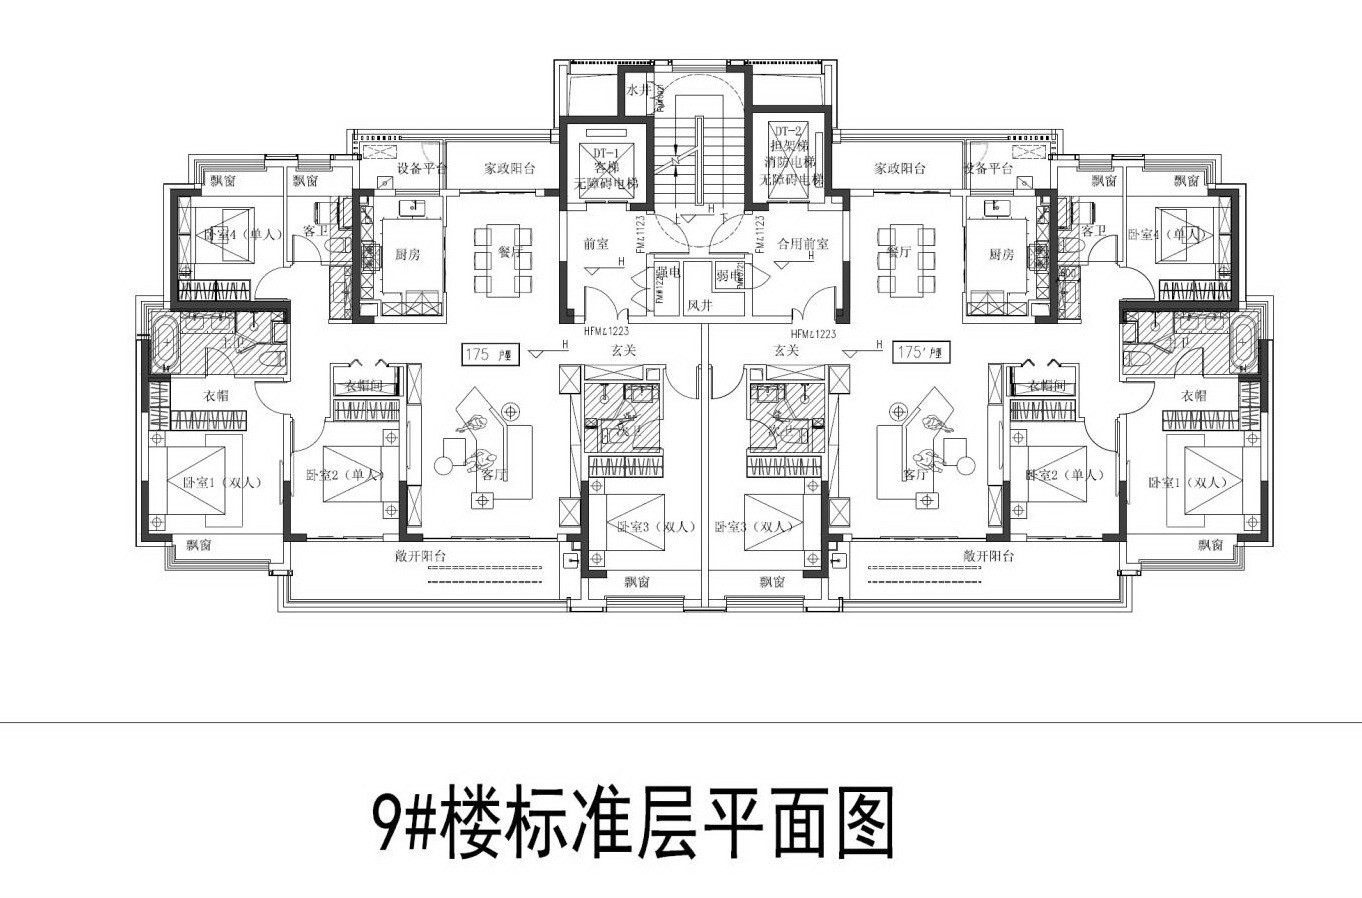 苏地2021-WG-24号地块B区 #9幢户型设计图